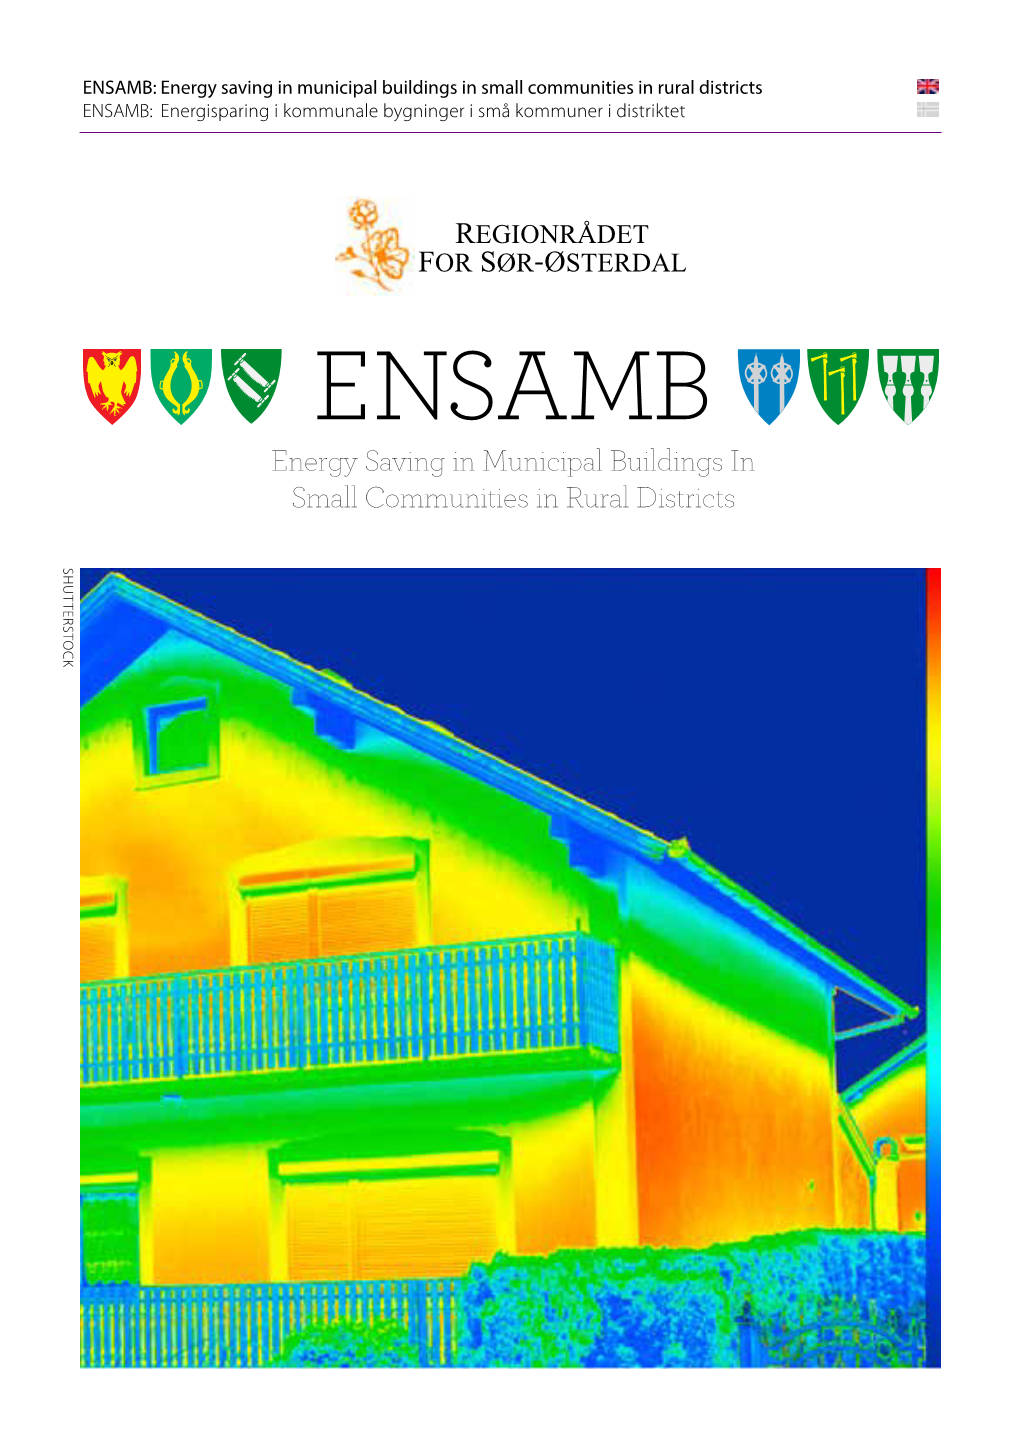 ENSAMB: Energy Saving in Municipal Buildings in Small Communities in Rural Districts ENSAMB: Energisparing I Kommunale Bygninger I Små Kommuner I Distriktet